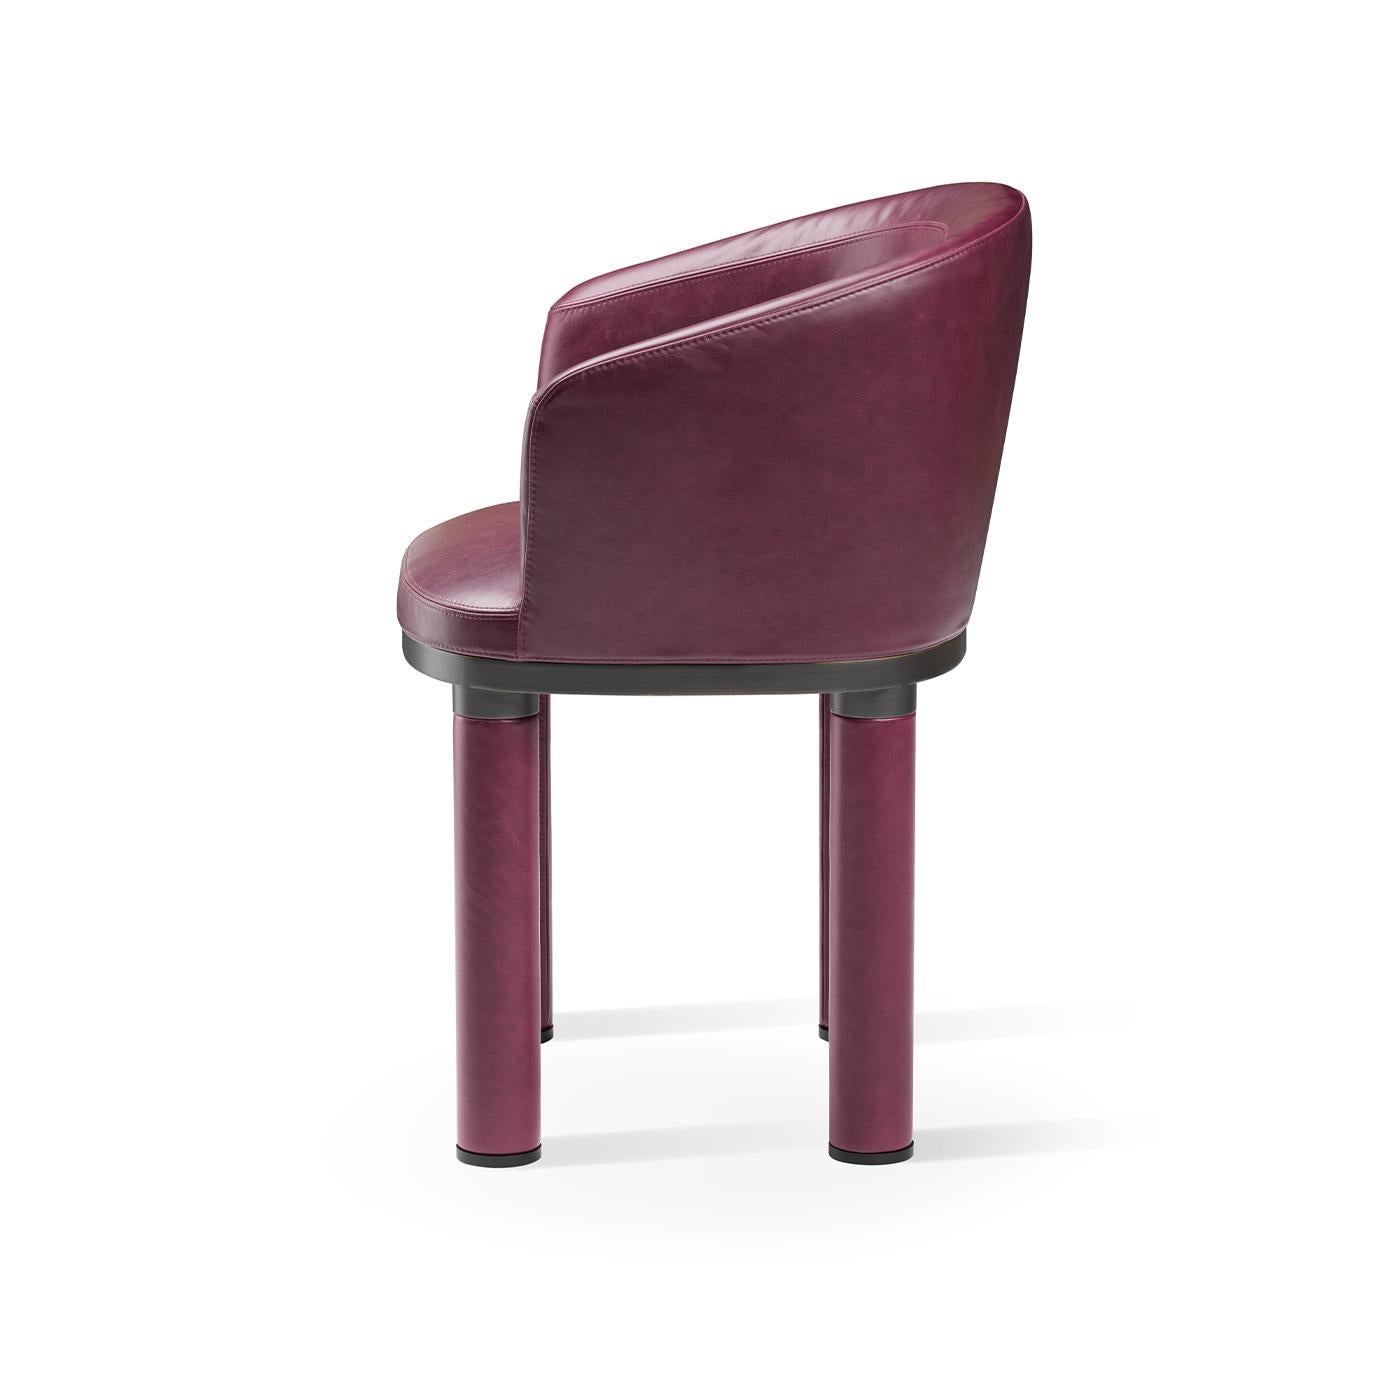 Se distinguant par un ton violet accrocheur, ce fauteuil fera une déclaration élégante dans un intérieur contemporain, surtout lorsqu'il est associé à d'autres de la même série pour un look raffiné et cohérent. Simple et élégante, elle présente une